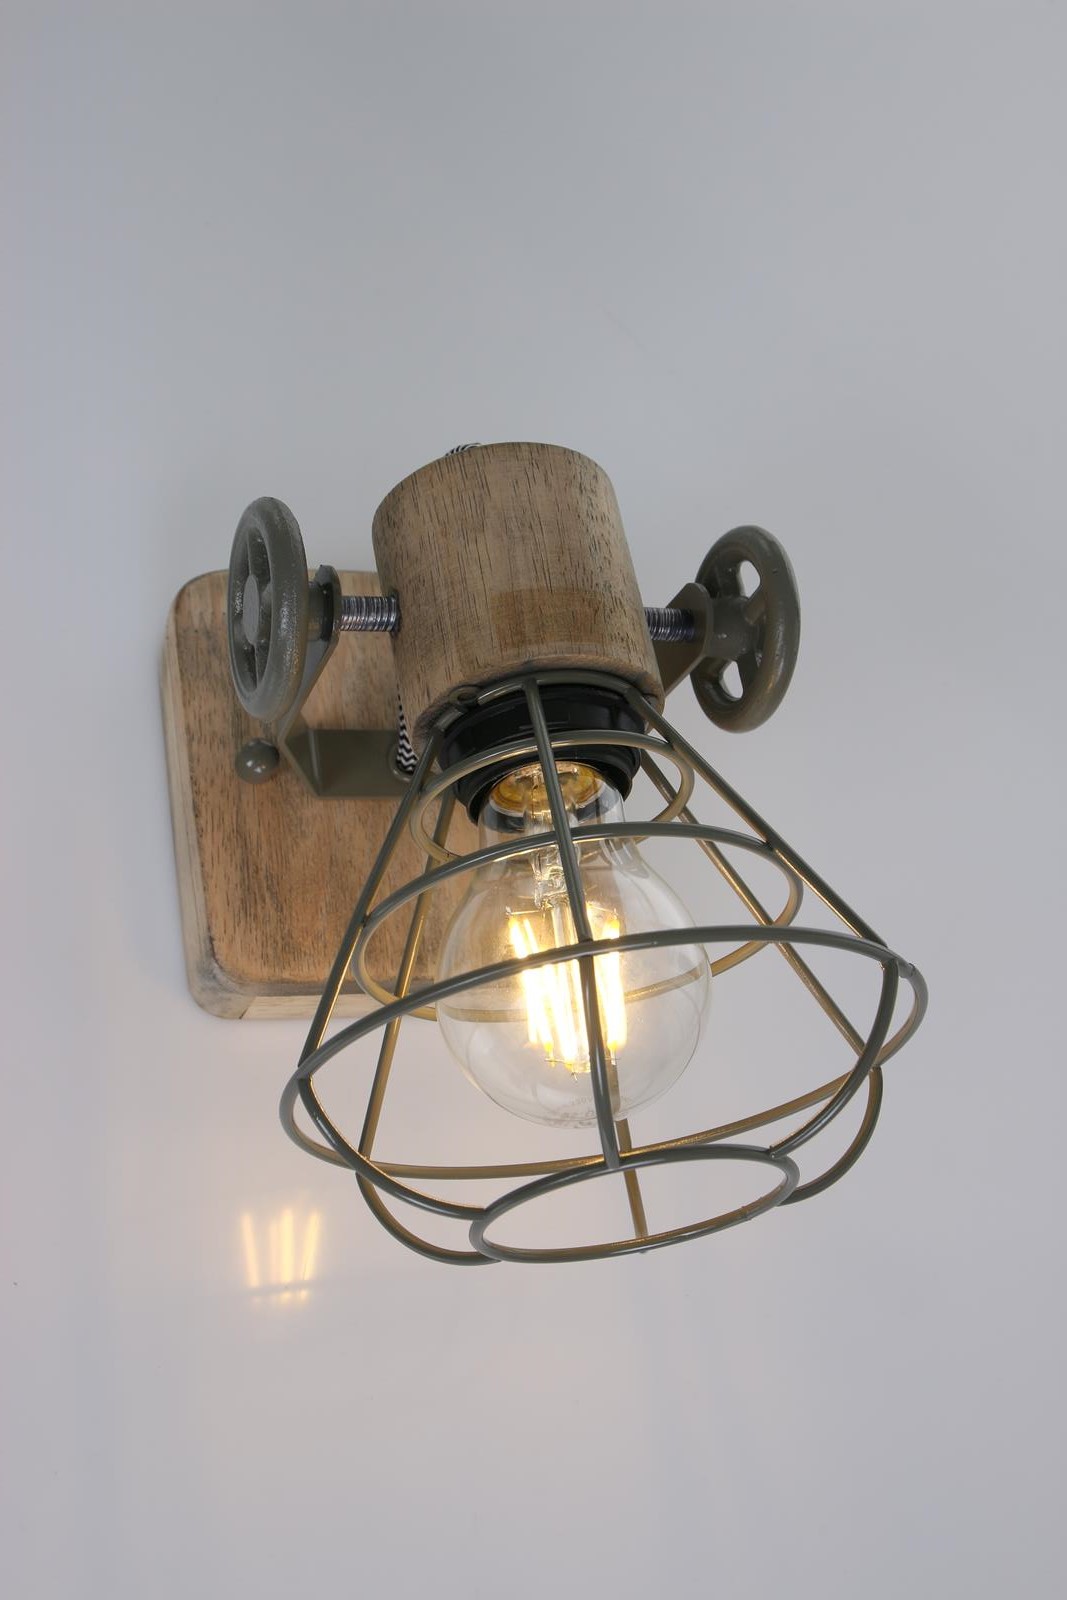 Anne GEURNSEY Wand- Deckenstrahler in freshem Industriedesign 1-flammig mit Holz in Gruen